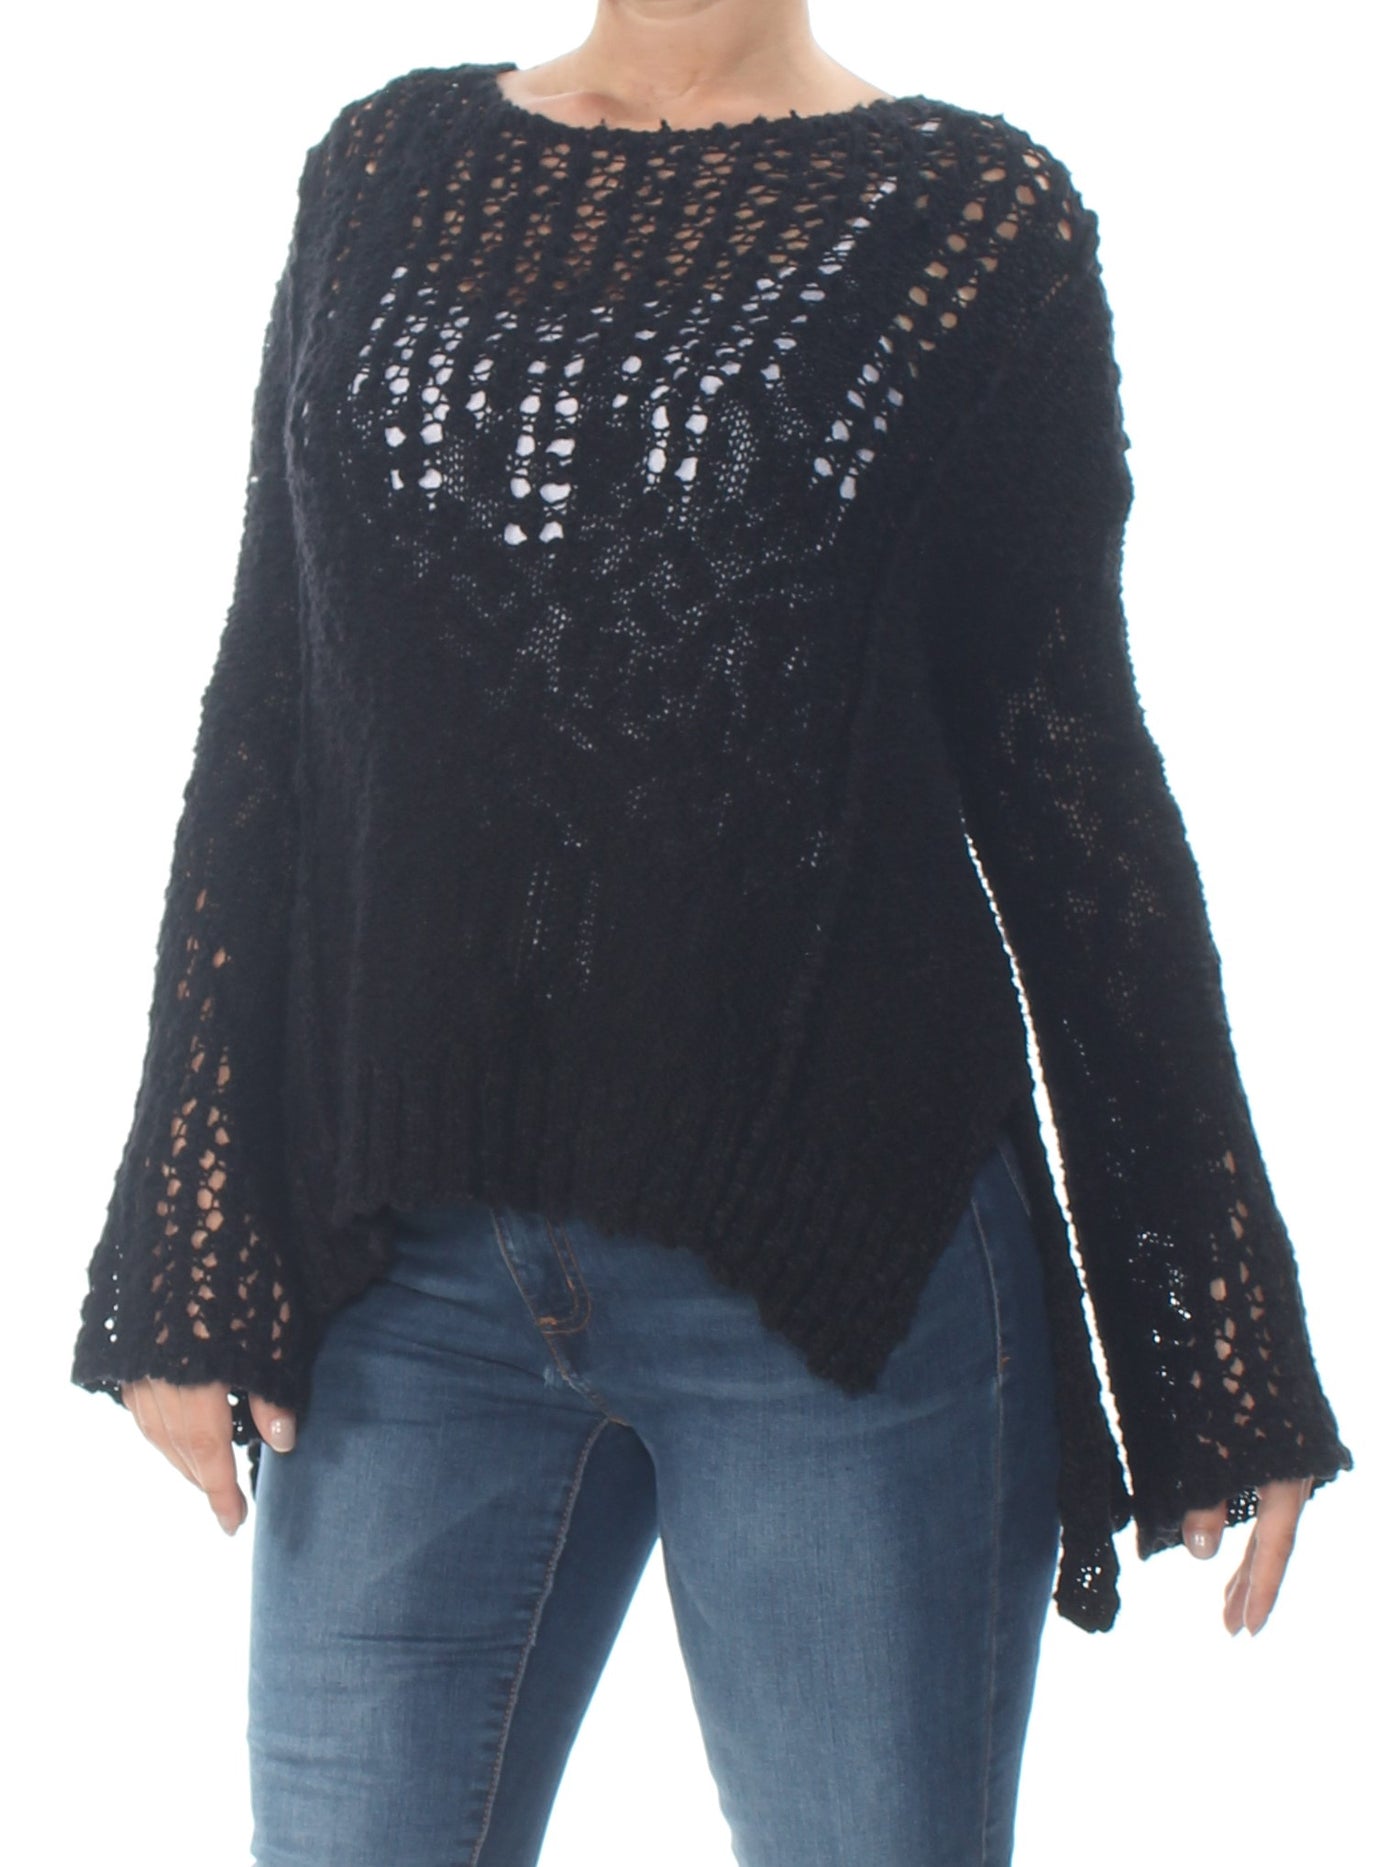 ARIZONA Womens Black Eyelet Long Sleeve Jewel Neck Sweater